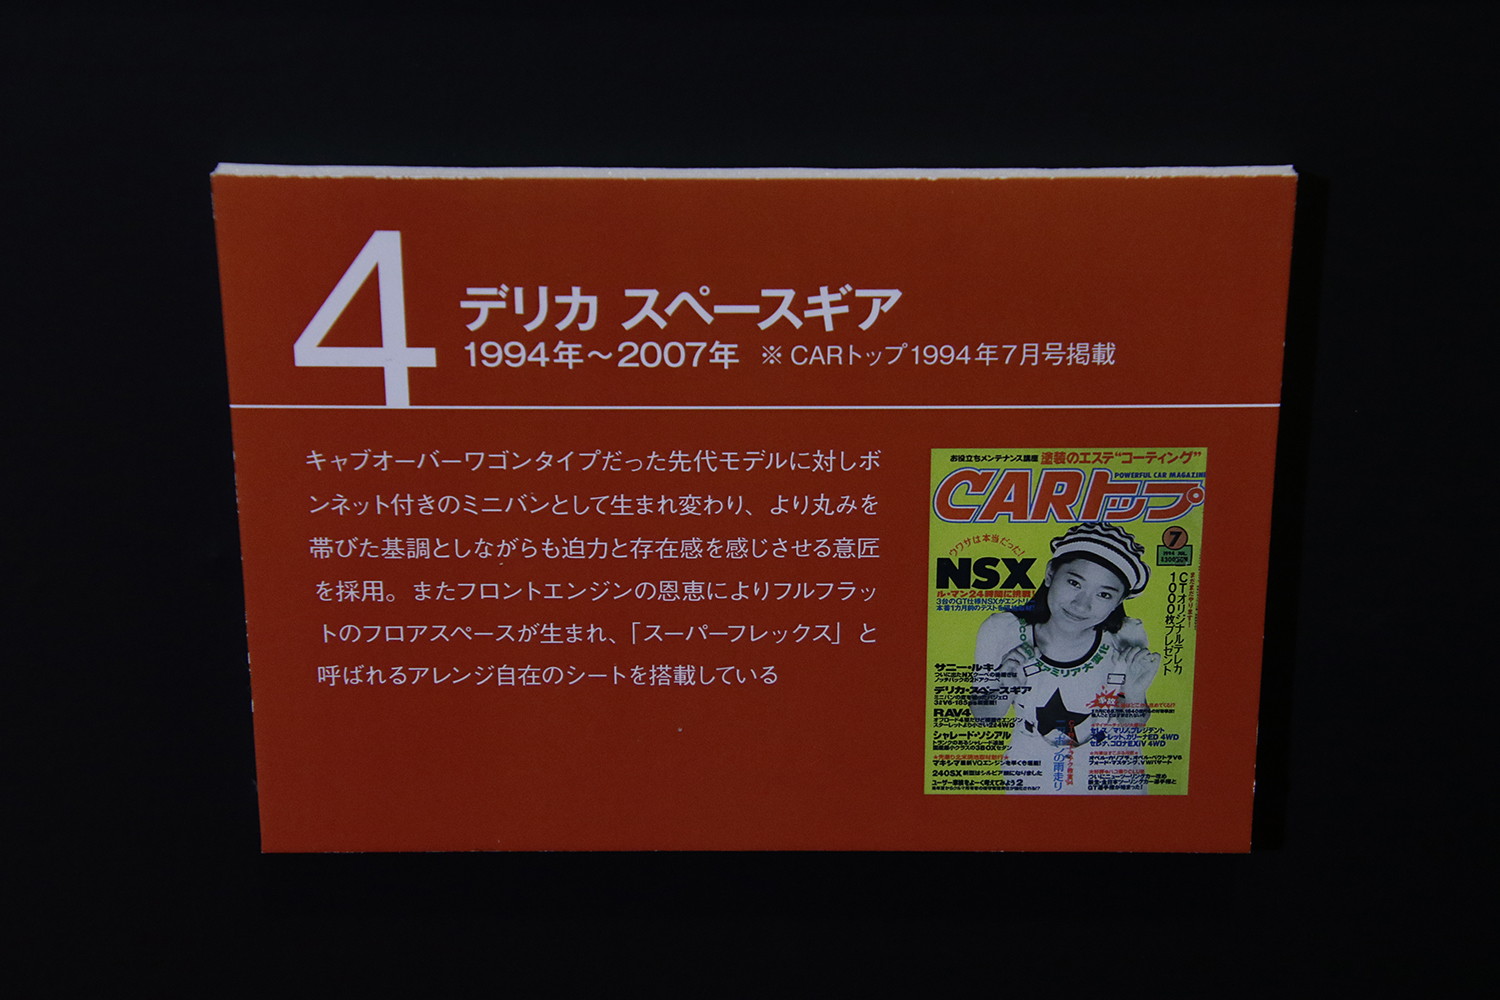 「CARトップ」と「三菱デリカ」はともに55才で貫禄の歴史あり 〜 画像40